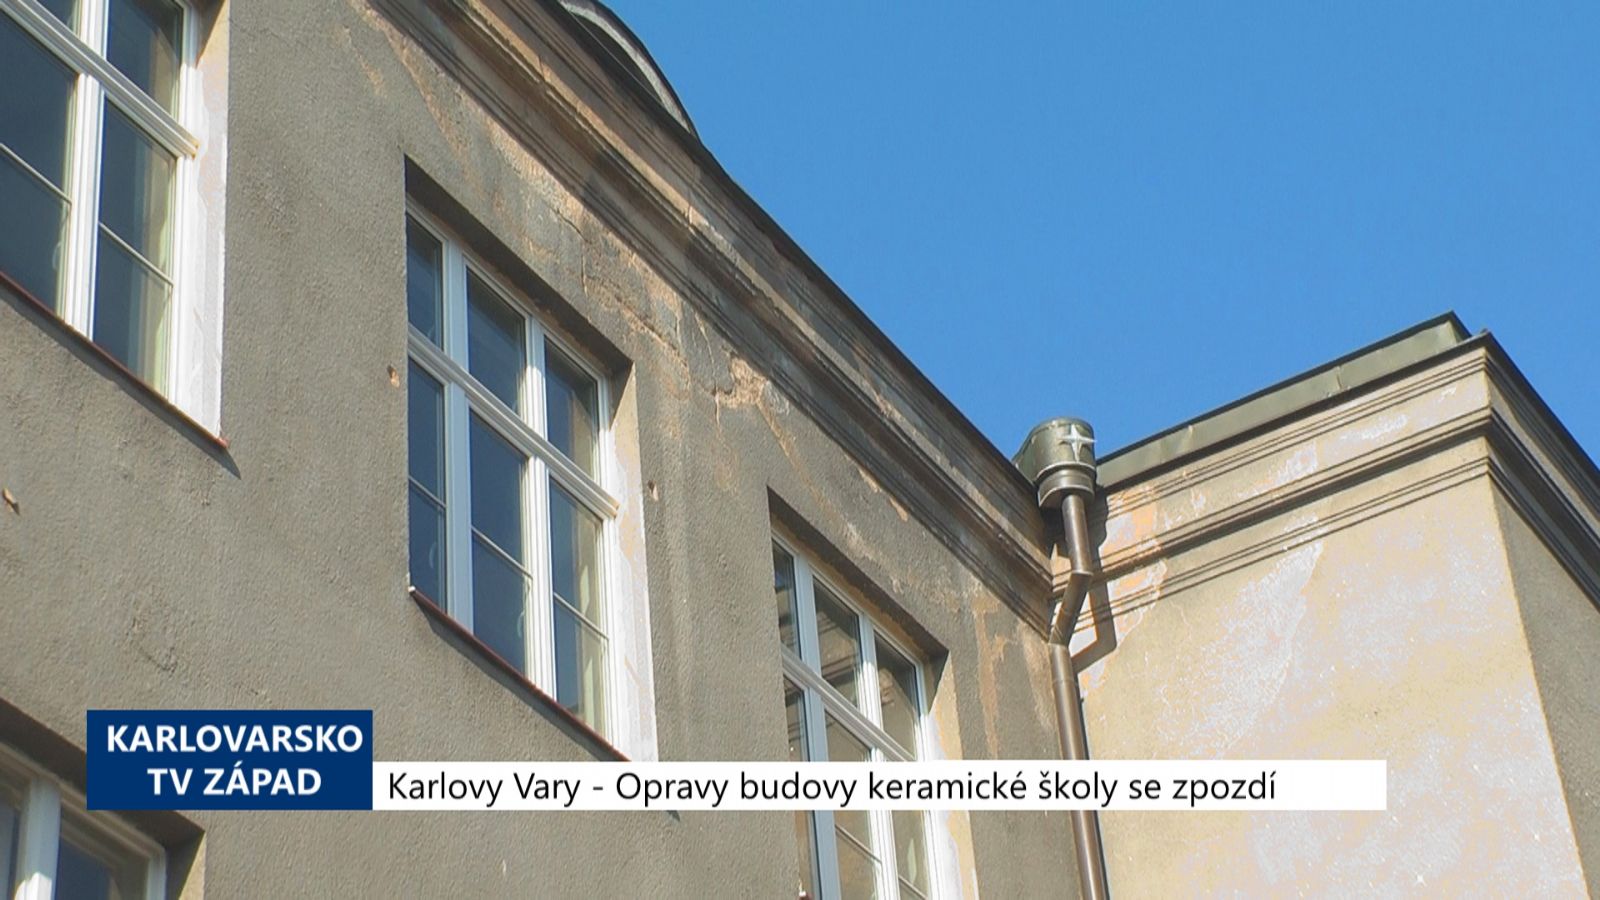 Karlovy Vary: Opravy budovy keramické školy se zpozdí (TV Západ)